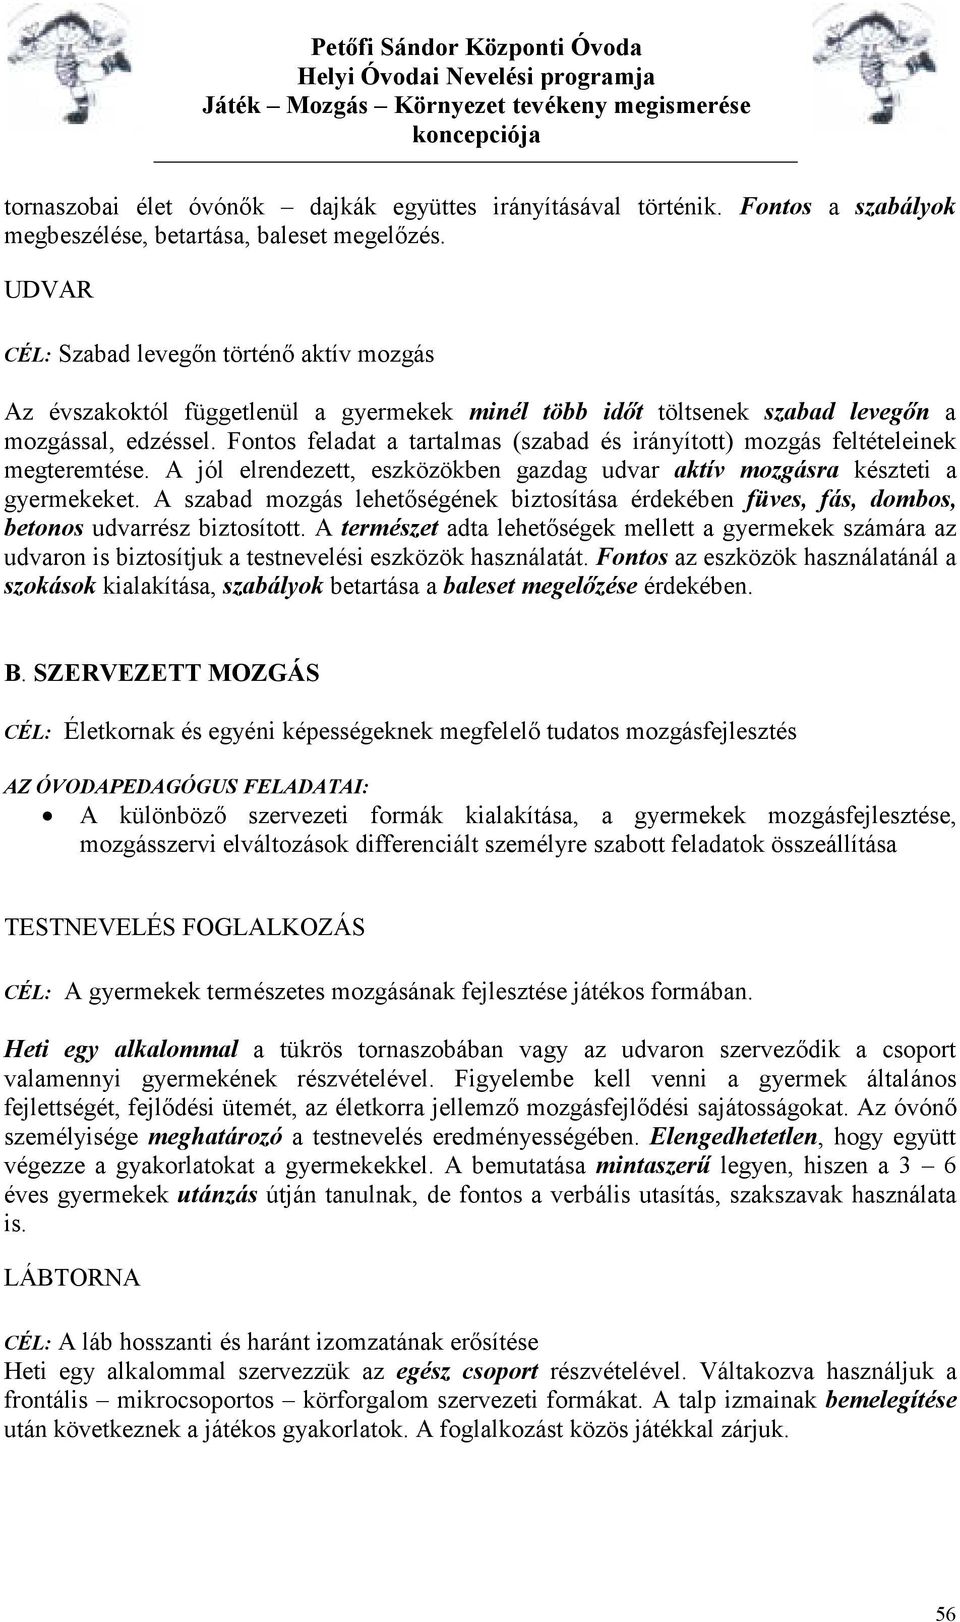 Óvodai Nevelési Koncepció - PDF Ingyenes letöltés